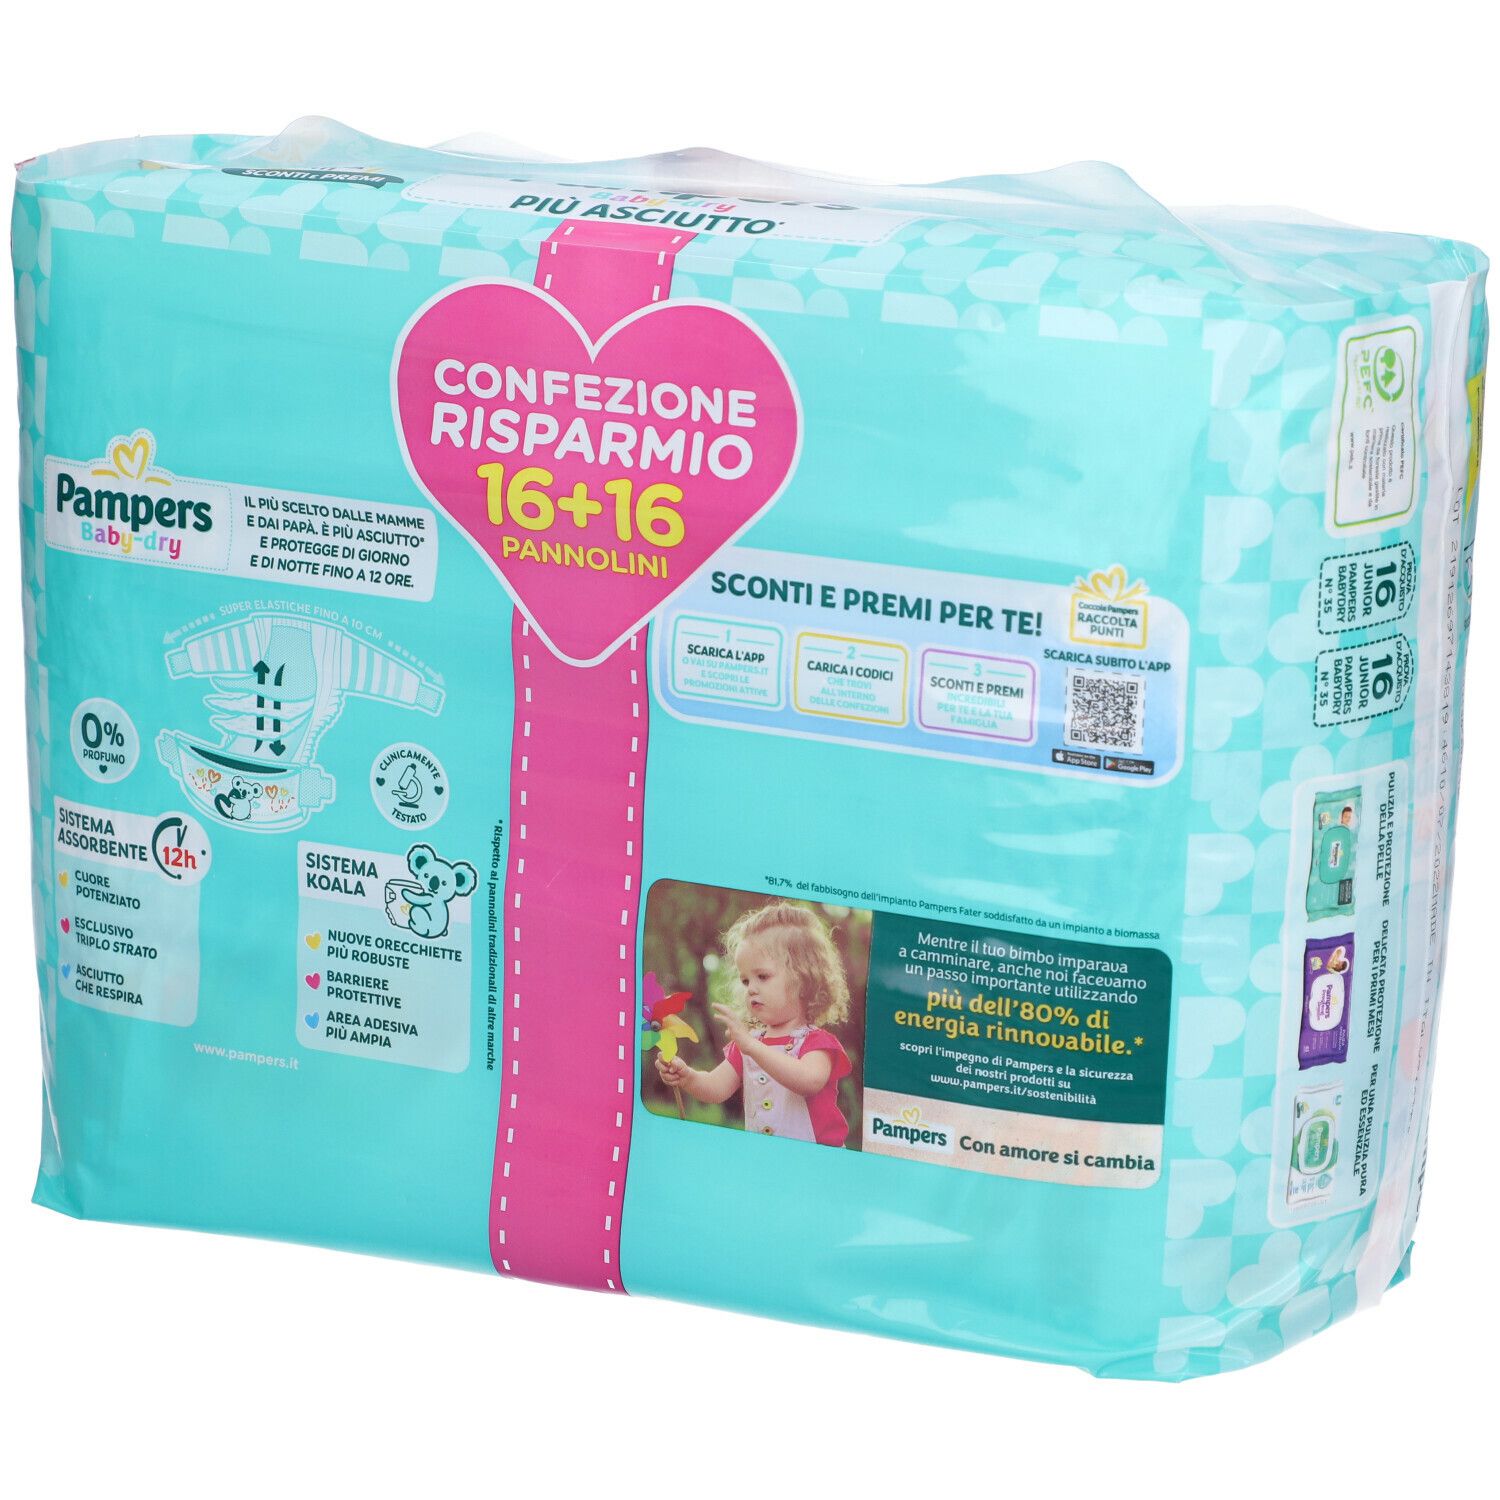 Pampers Baby-Dry Più Asciutto 5 Junior 11-25 kg Confezione Risparmio